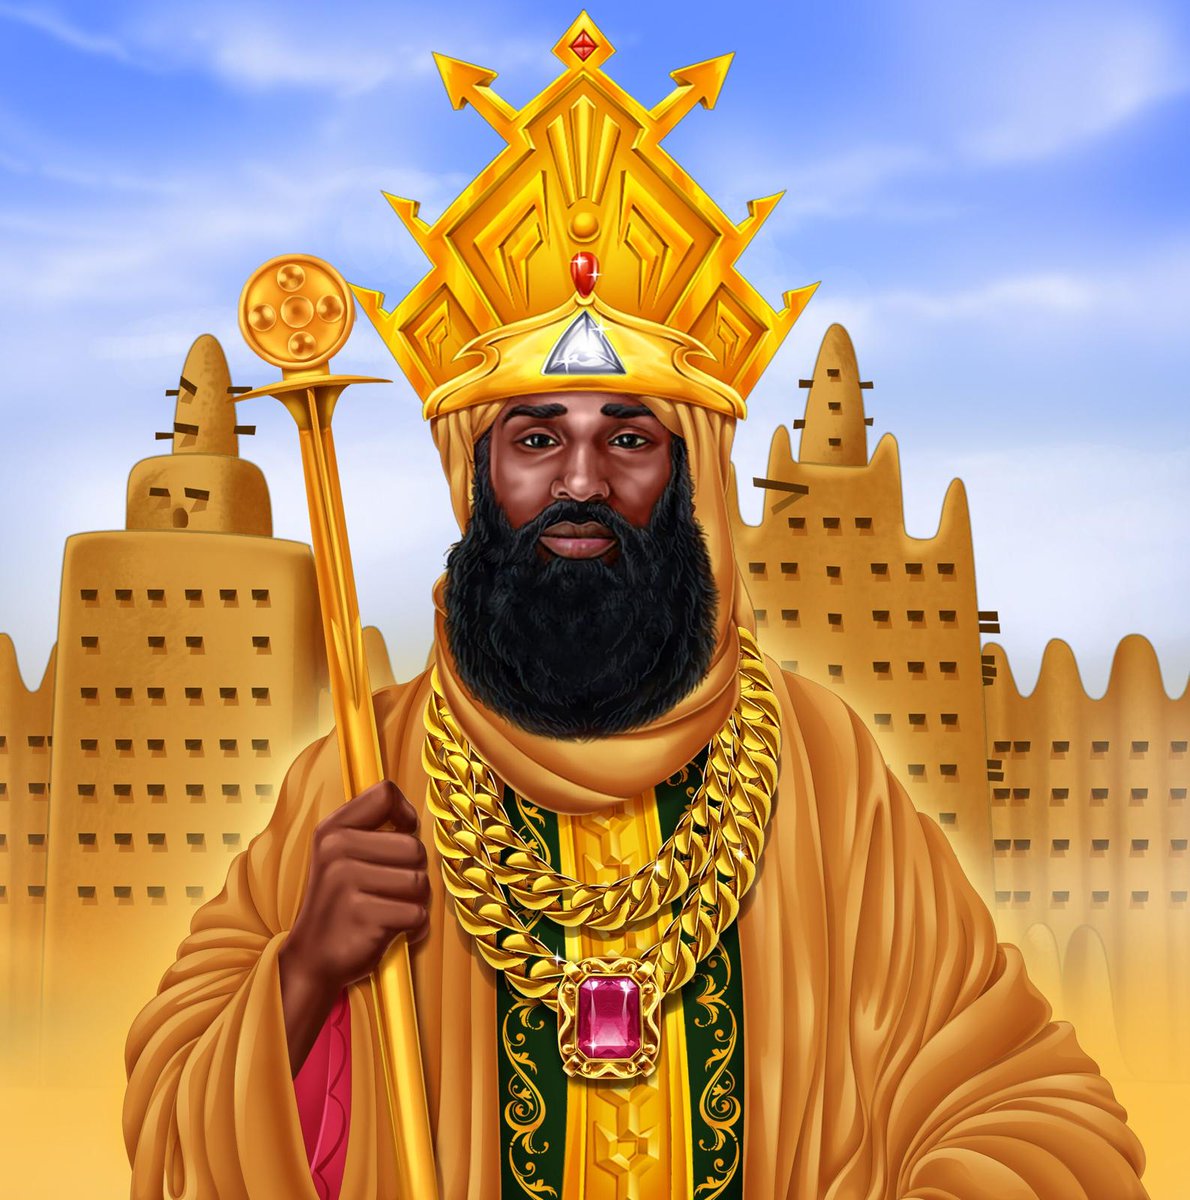 L’homme le plus riche de tous les temps serait l’ouest-africain Mansa Moussa : un Empereur Visionnaire (1ère partie) History Time ! Mansa Moussa, généralement présenté comme l’homme le plus fortuné au monde et de tous les temps, fut le célèbre souverain de l'Empire du Mali de…